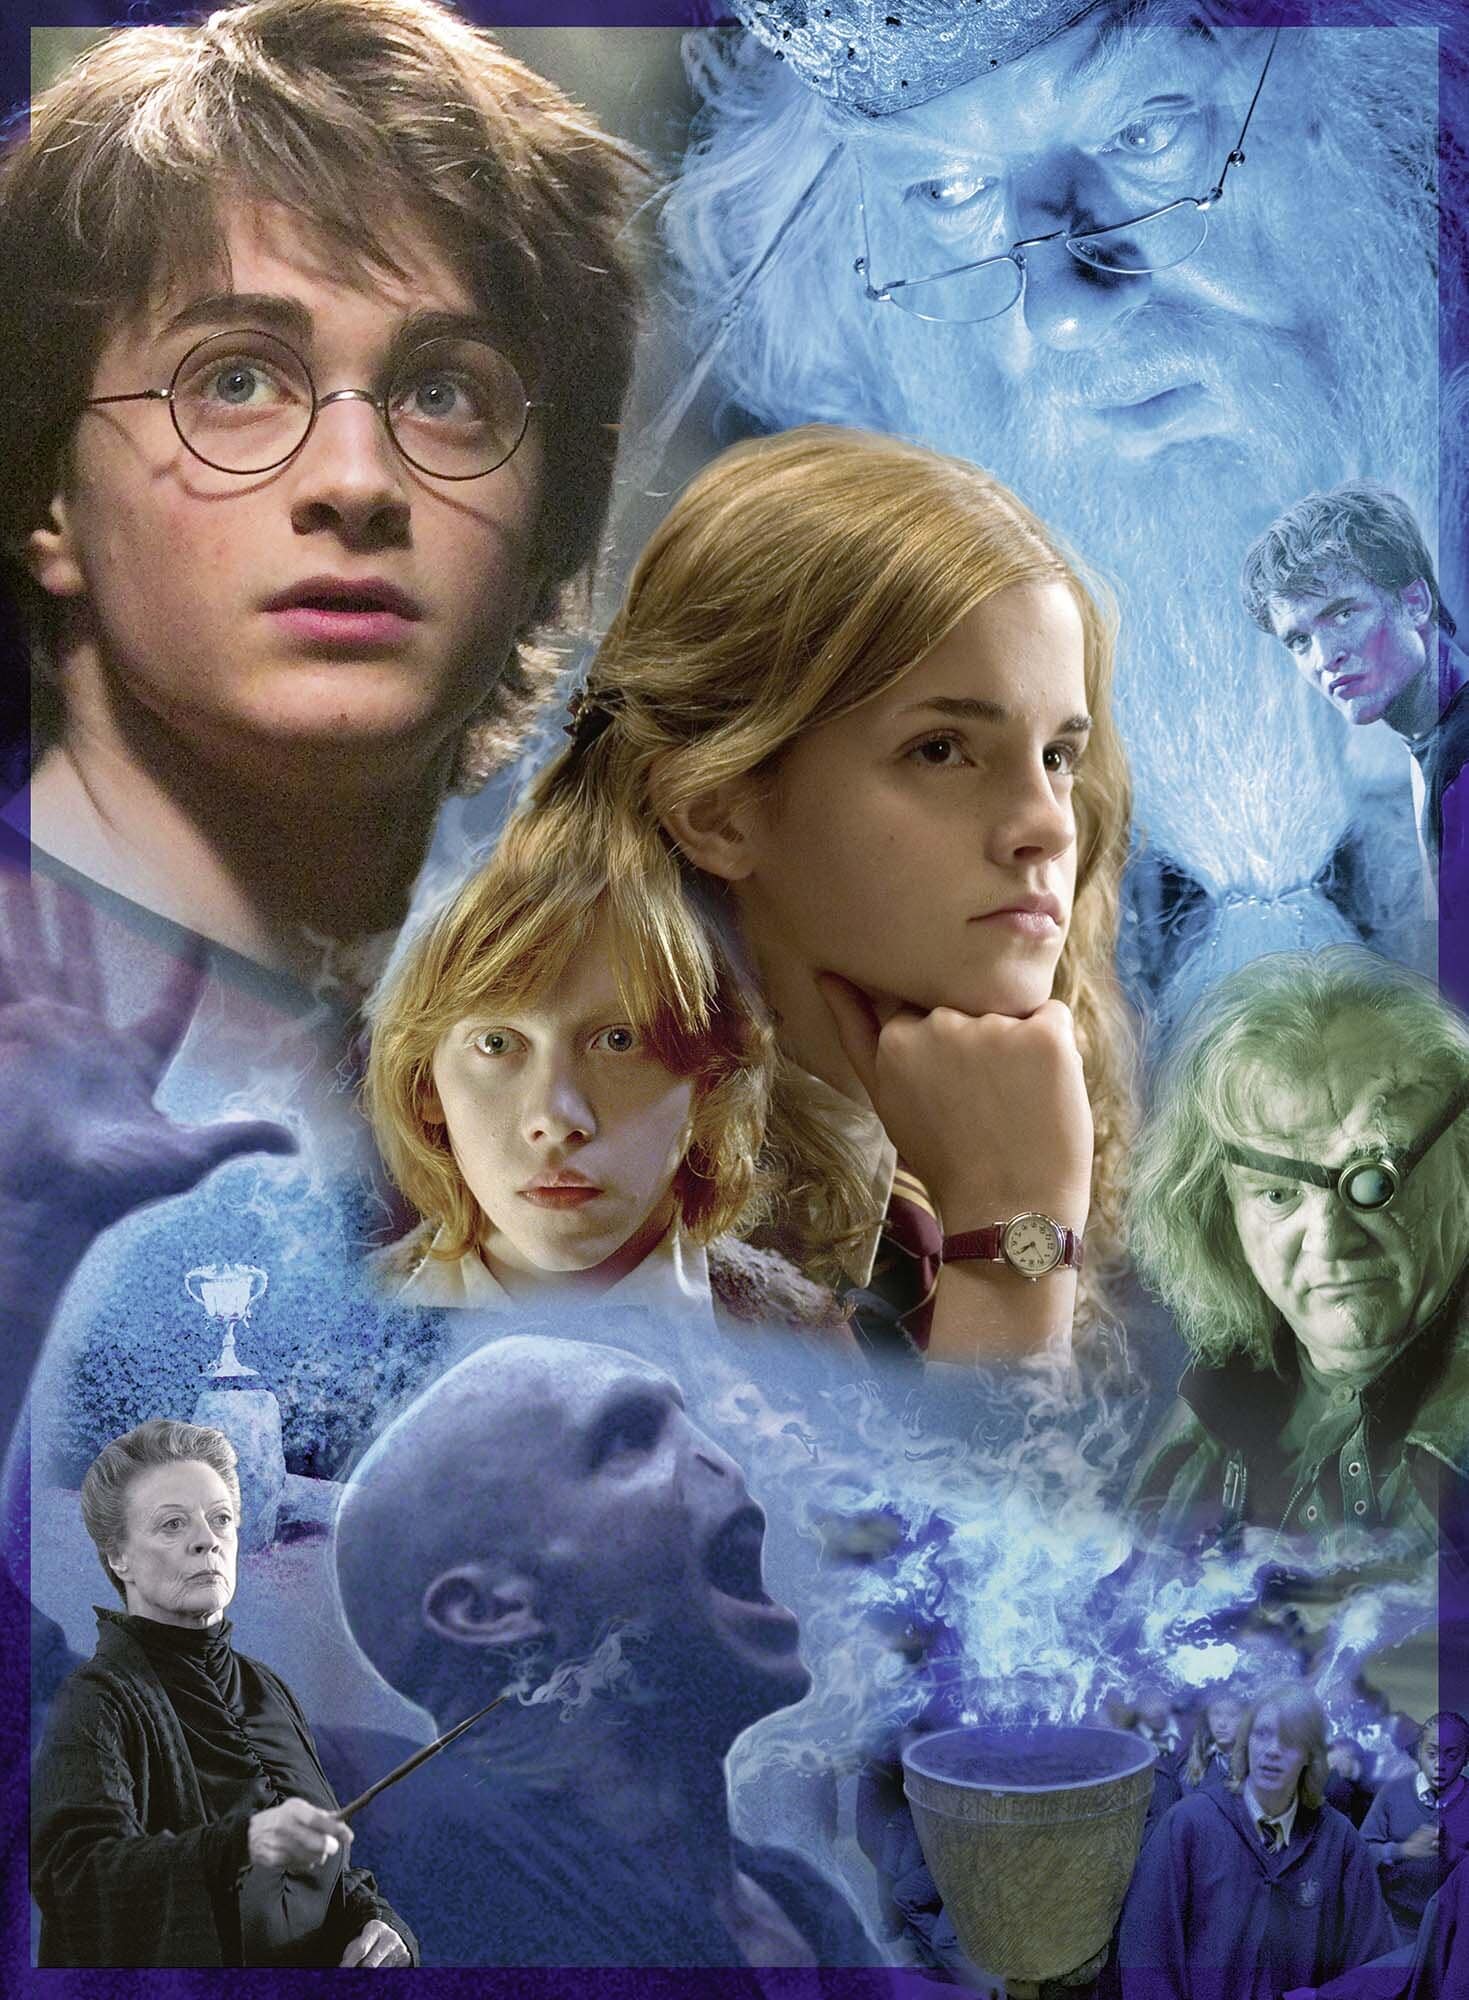 Ravensburger Puslespill, Harry Potter at Hogwarts 500 brikker